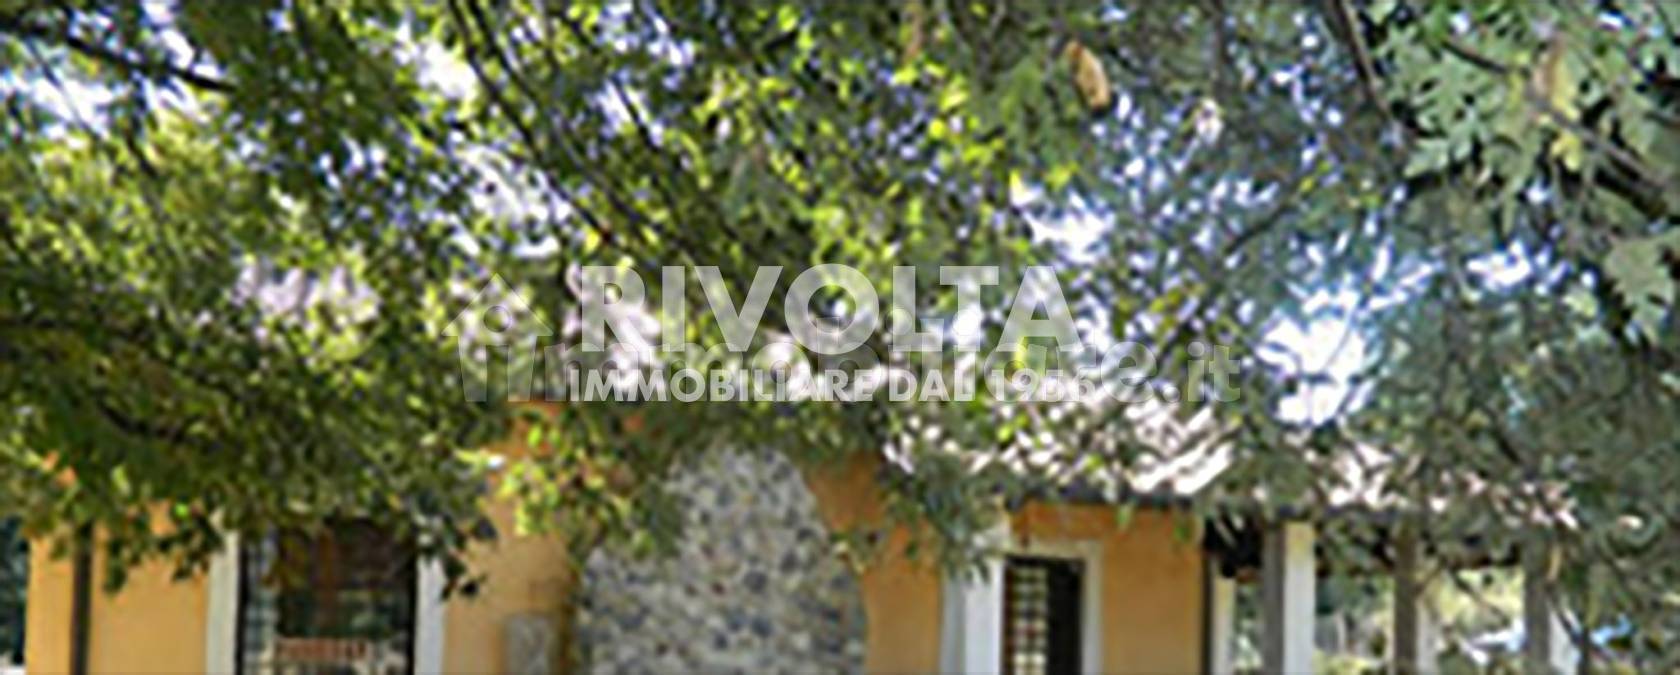 Villa in vendita a Campagnano di Roma, 5 locali, prezzo € 190.125 | PortaleAgenzieImmobiliari.it